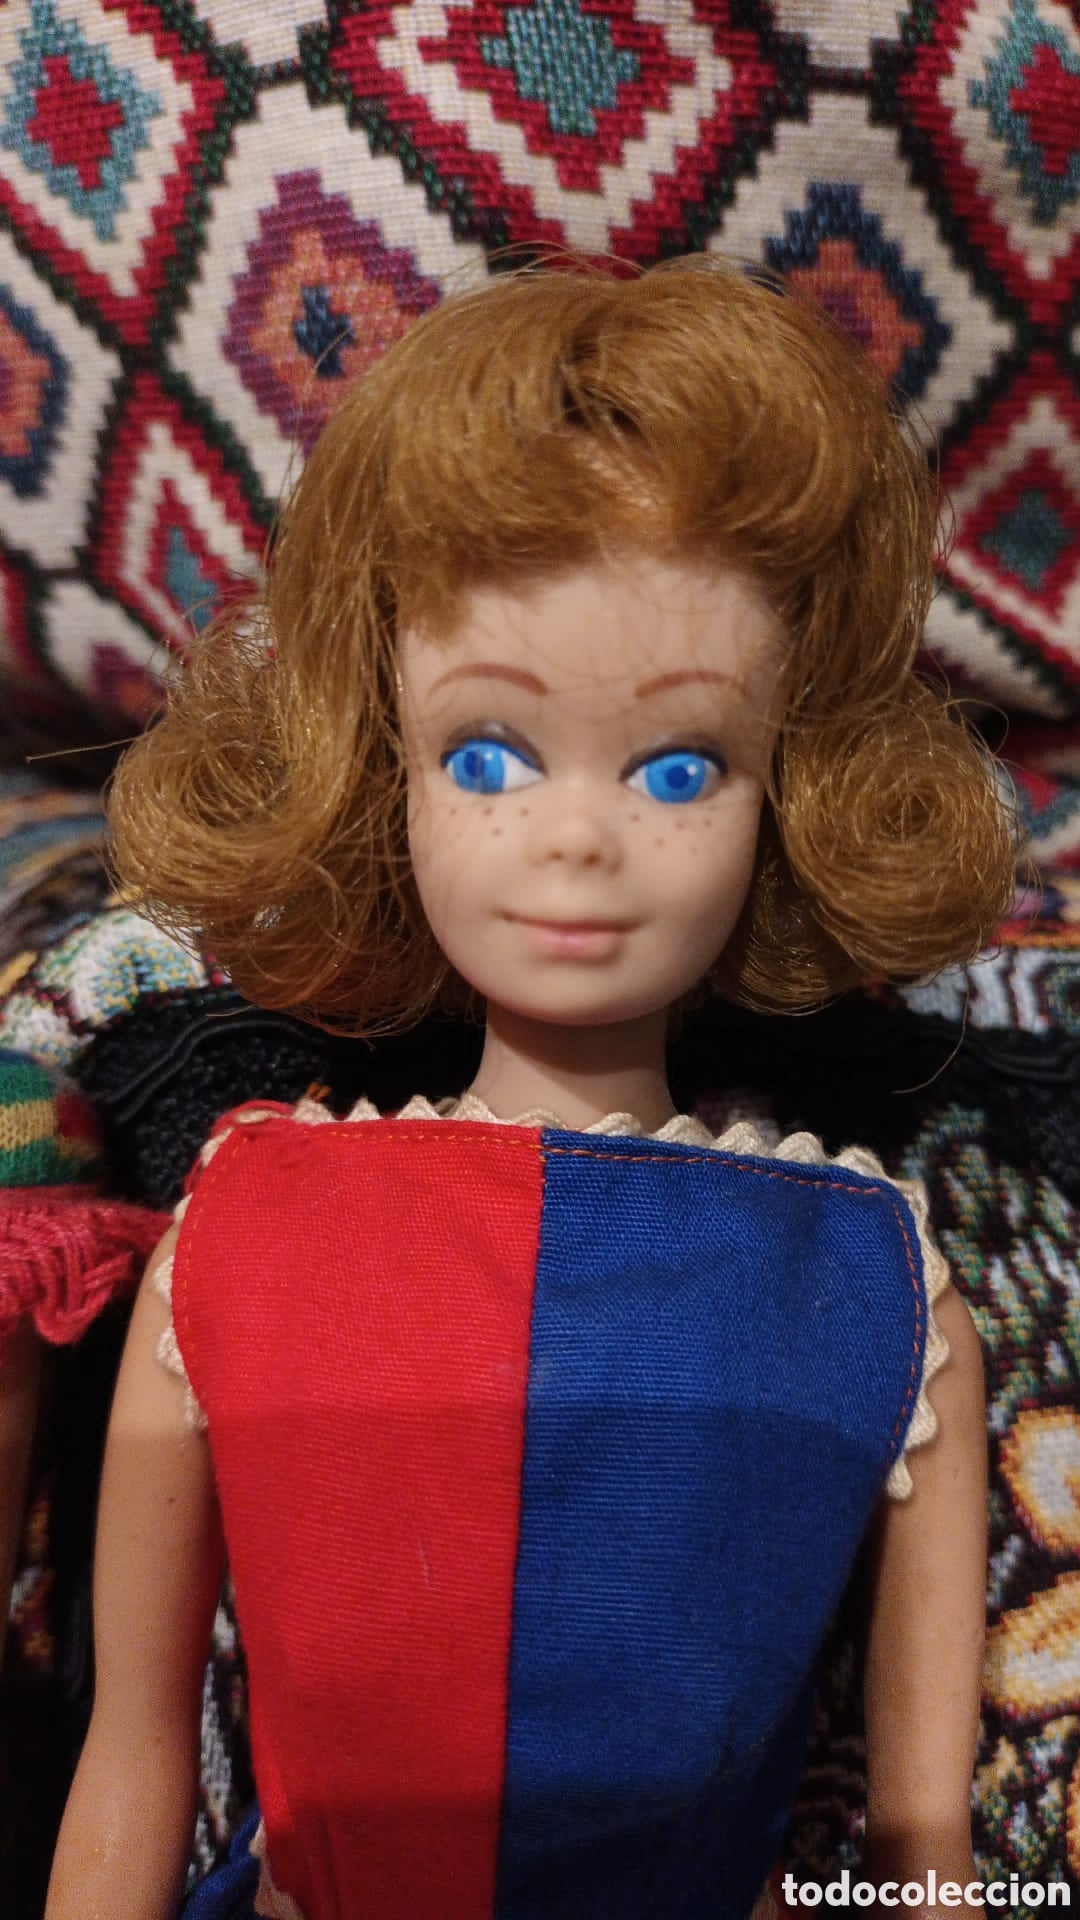 antigua muñeca bebé pelirroja de barbie, de la - Acheter Poupées